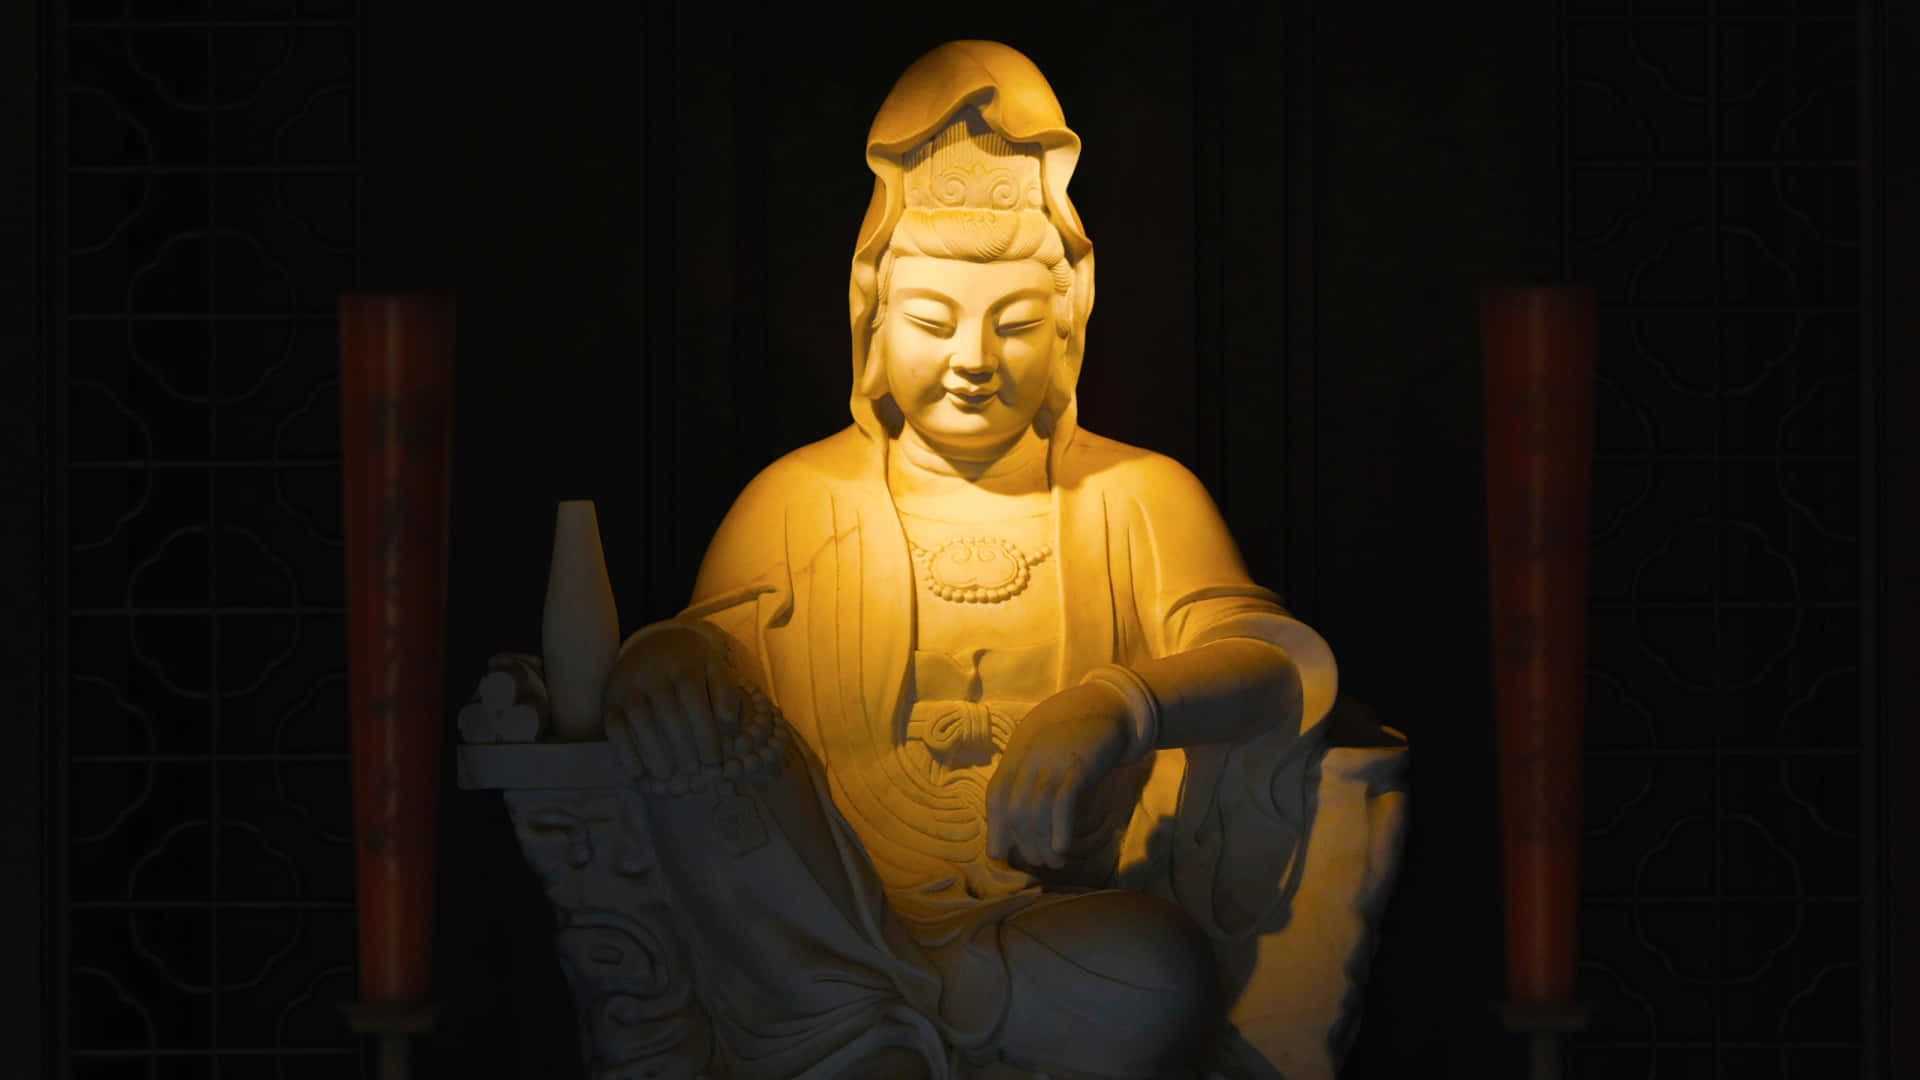 Buddhismusim Dunklen Bild